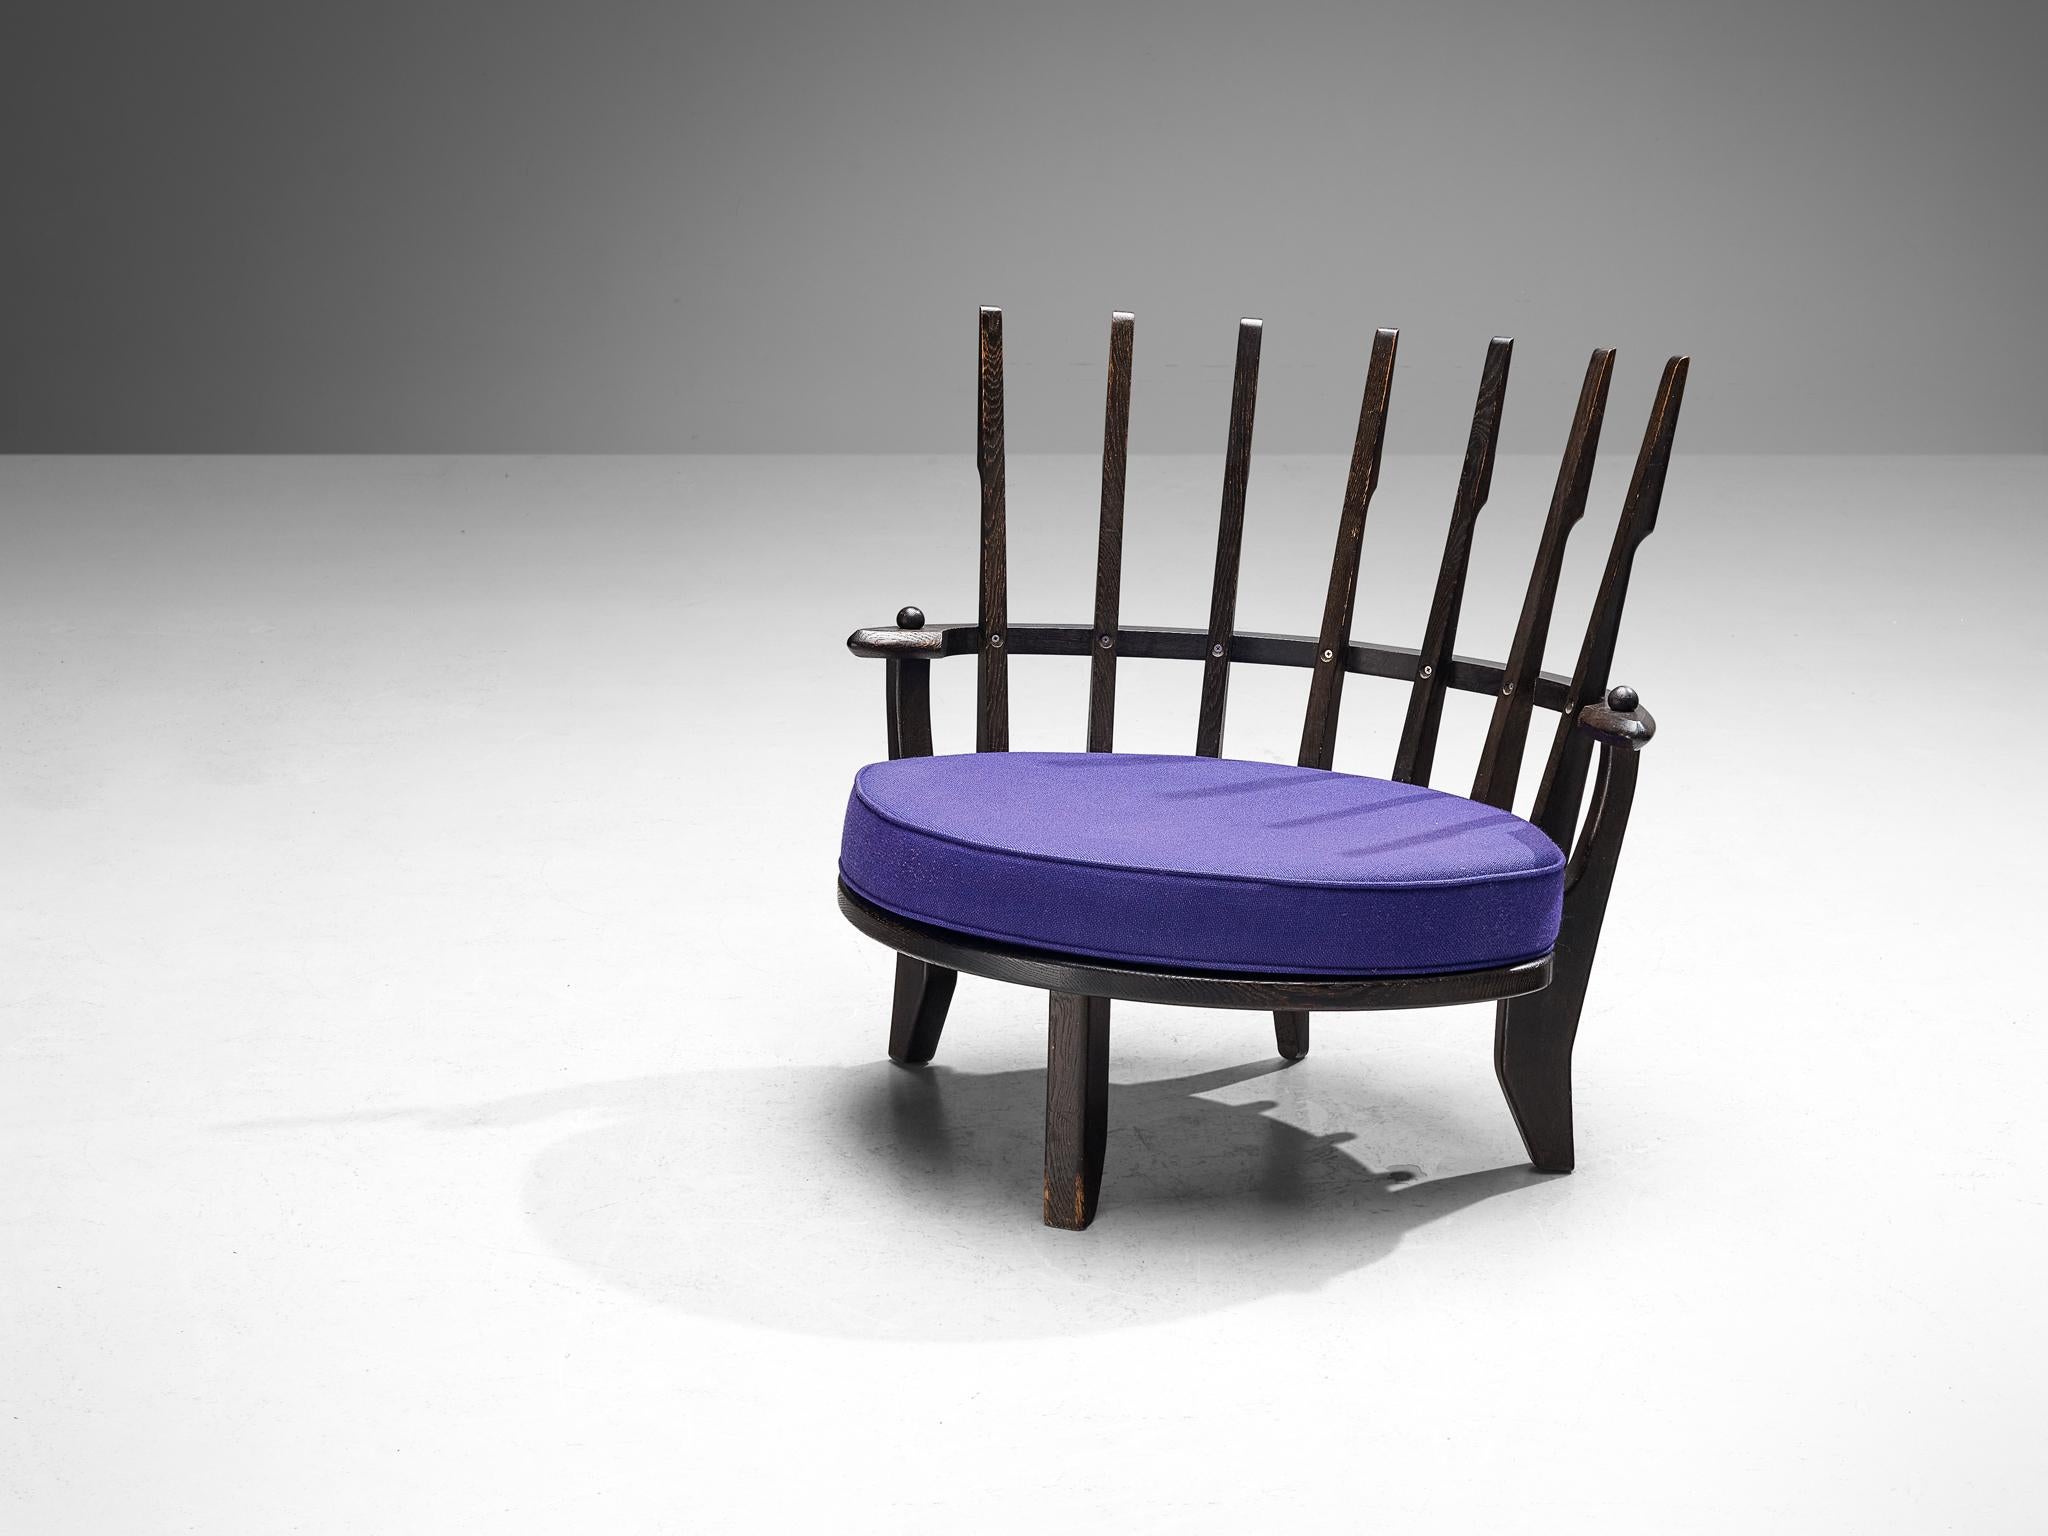 Guillerme et Chambron pour Votre Maison, chaise longue 'Tricoteuse', chêne laqué, laine, France, années 1960

Guillerme & Chambron ont conçu la chaise longue 'Tricoteuse' dans leur matériau de prédilection : le chêne massif. Ce modèle présente des